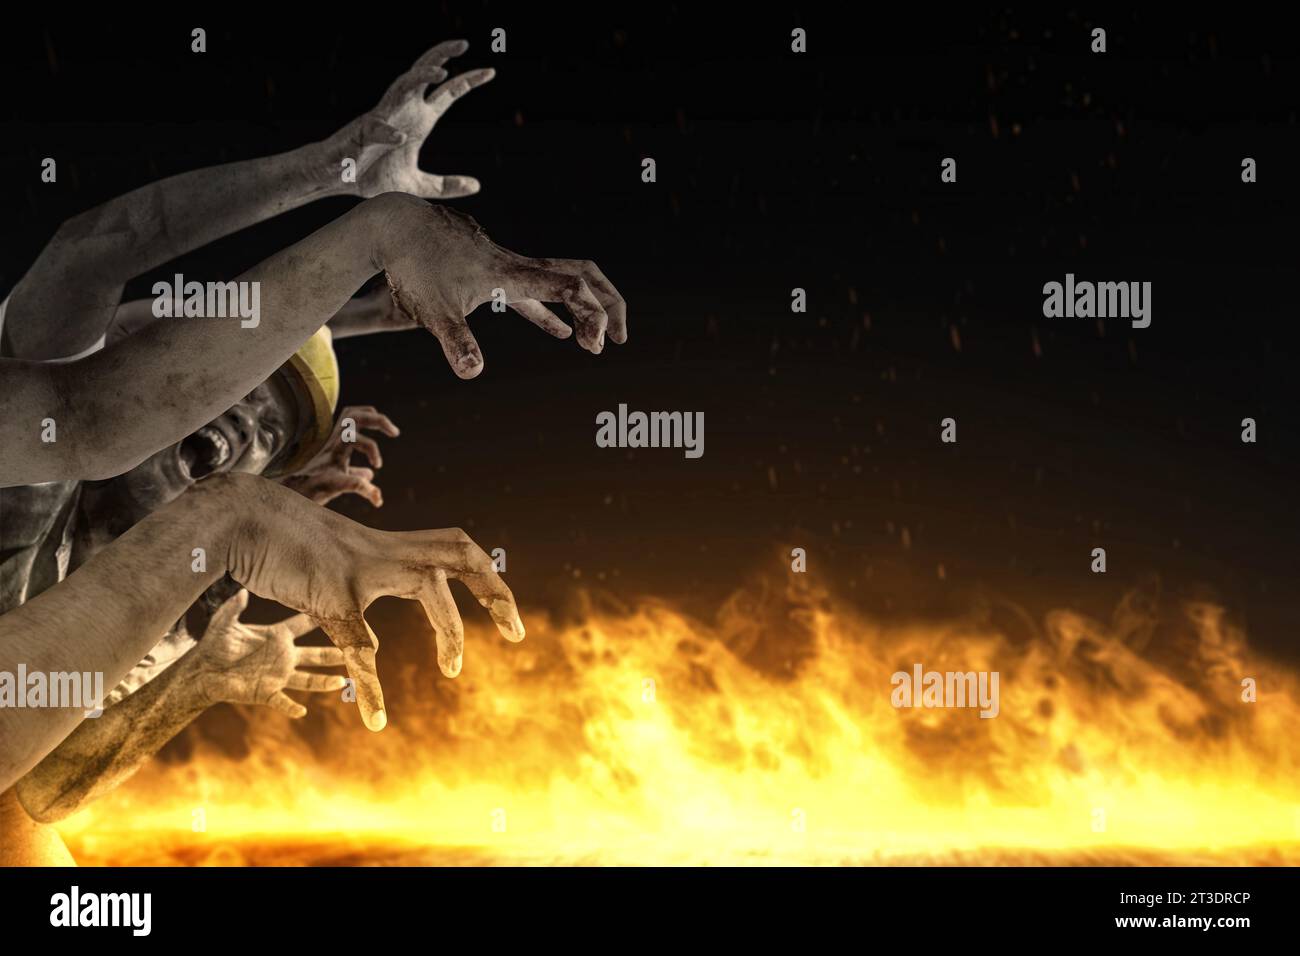 Zombiehände mit Feuer Flammen Hintergrund. Gruseliges Halloween-Konzept Stockfoto